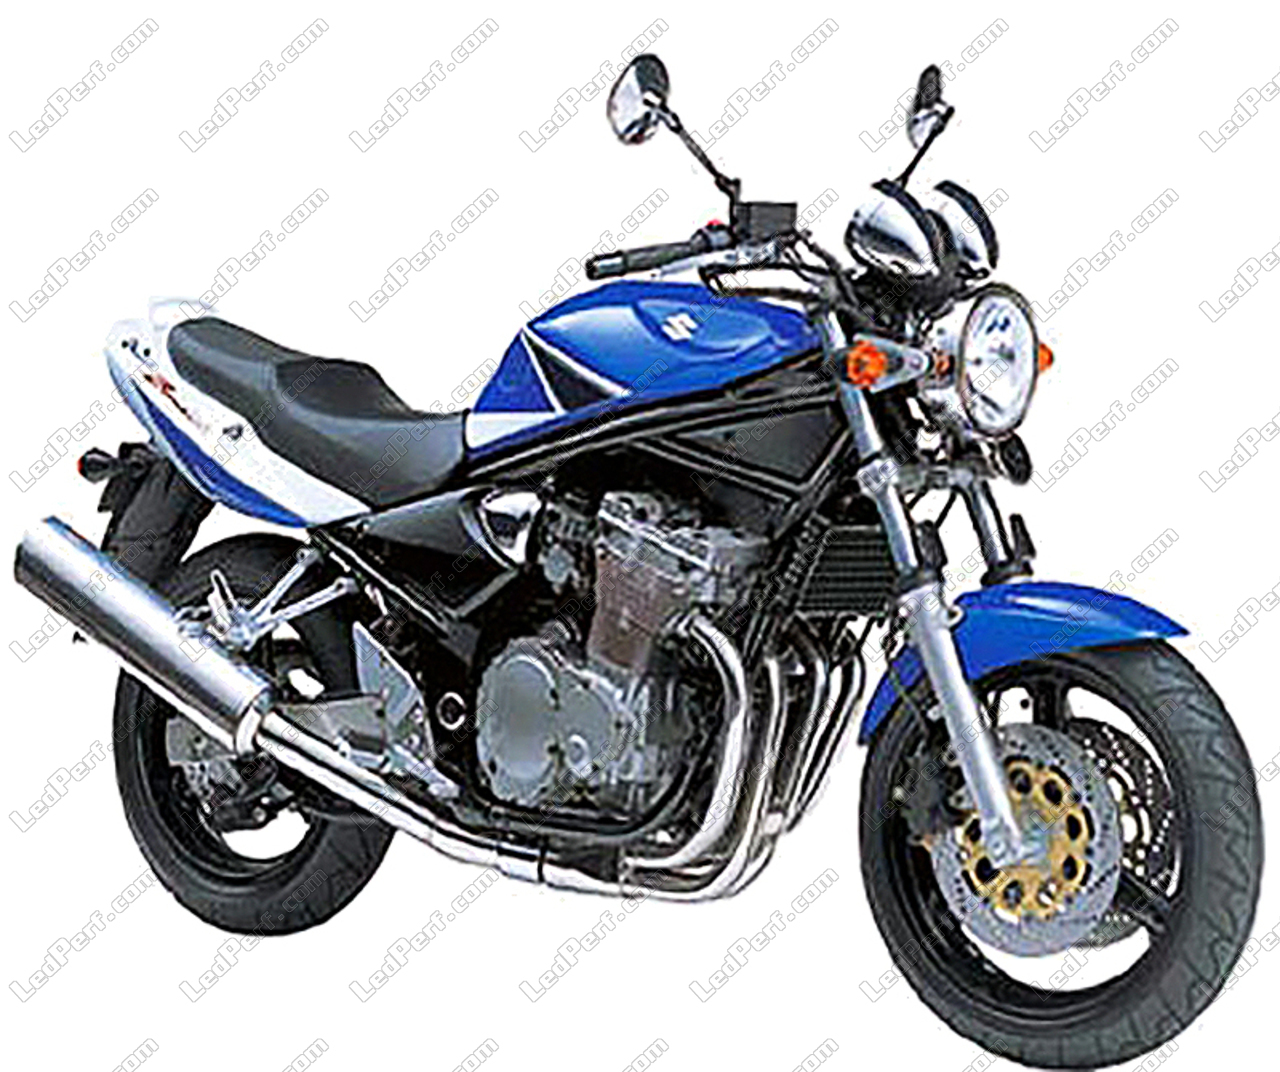 Couvercle de lampe indicateur de moto, lentille de clignotant de moto  droite de remplacement clair pour GSF 600 N/S Bandit 2000-2003 pour pièces  de